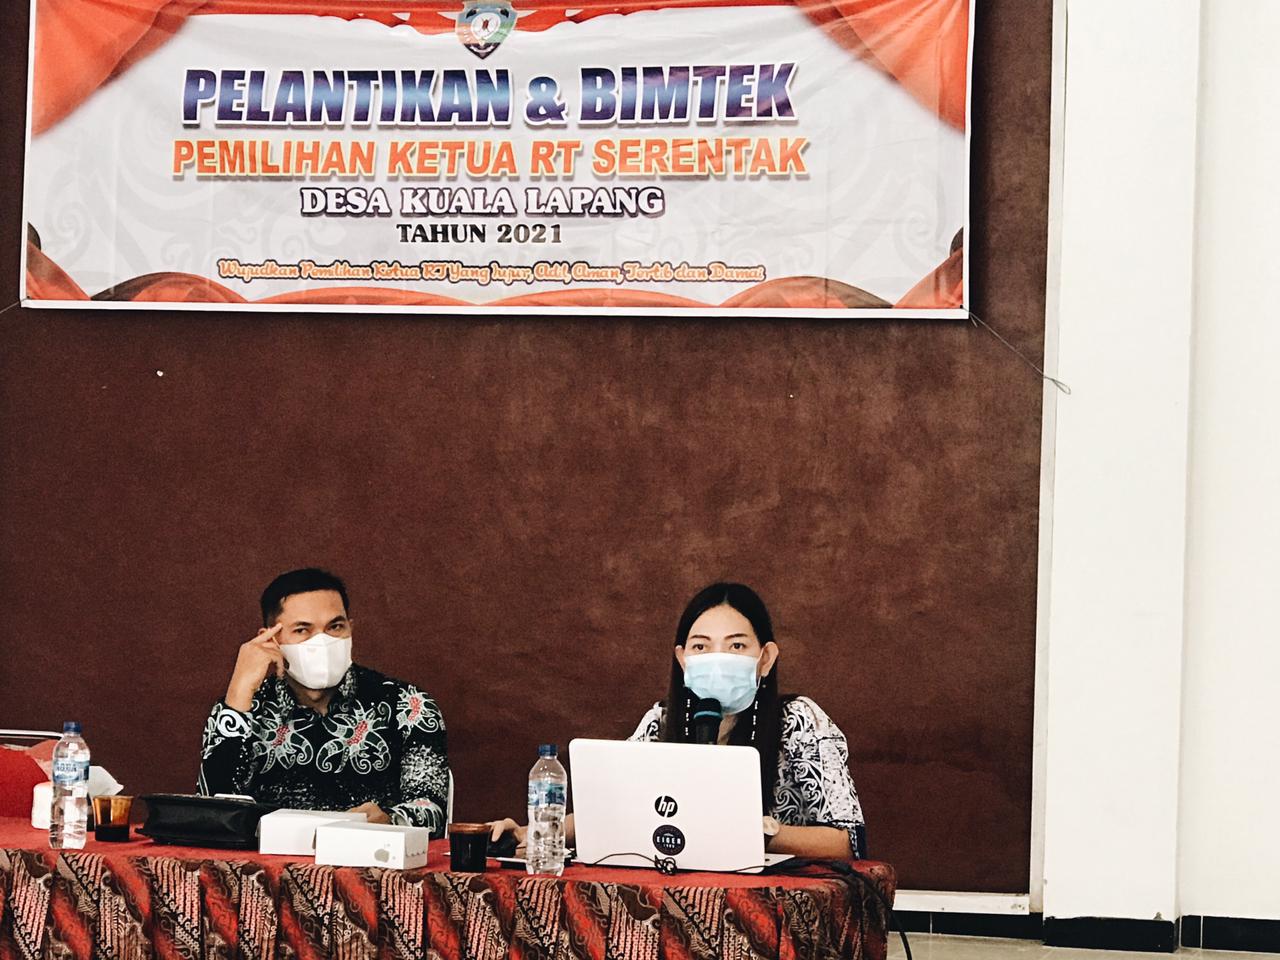 Pernah Jadi yang Pertama di Indonesia pada 2016, Sejumlah Desa di Kabupaten Malinau Kembali Gelar Pemilihan Ketua RT Serentak - Desapedia